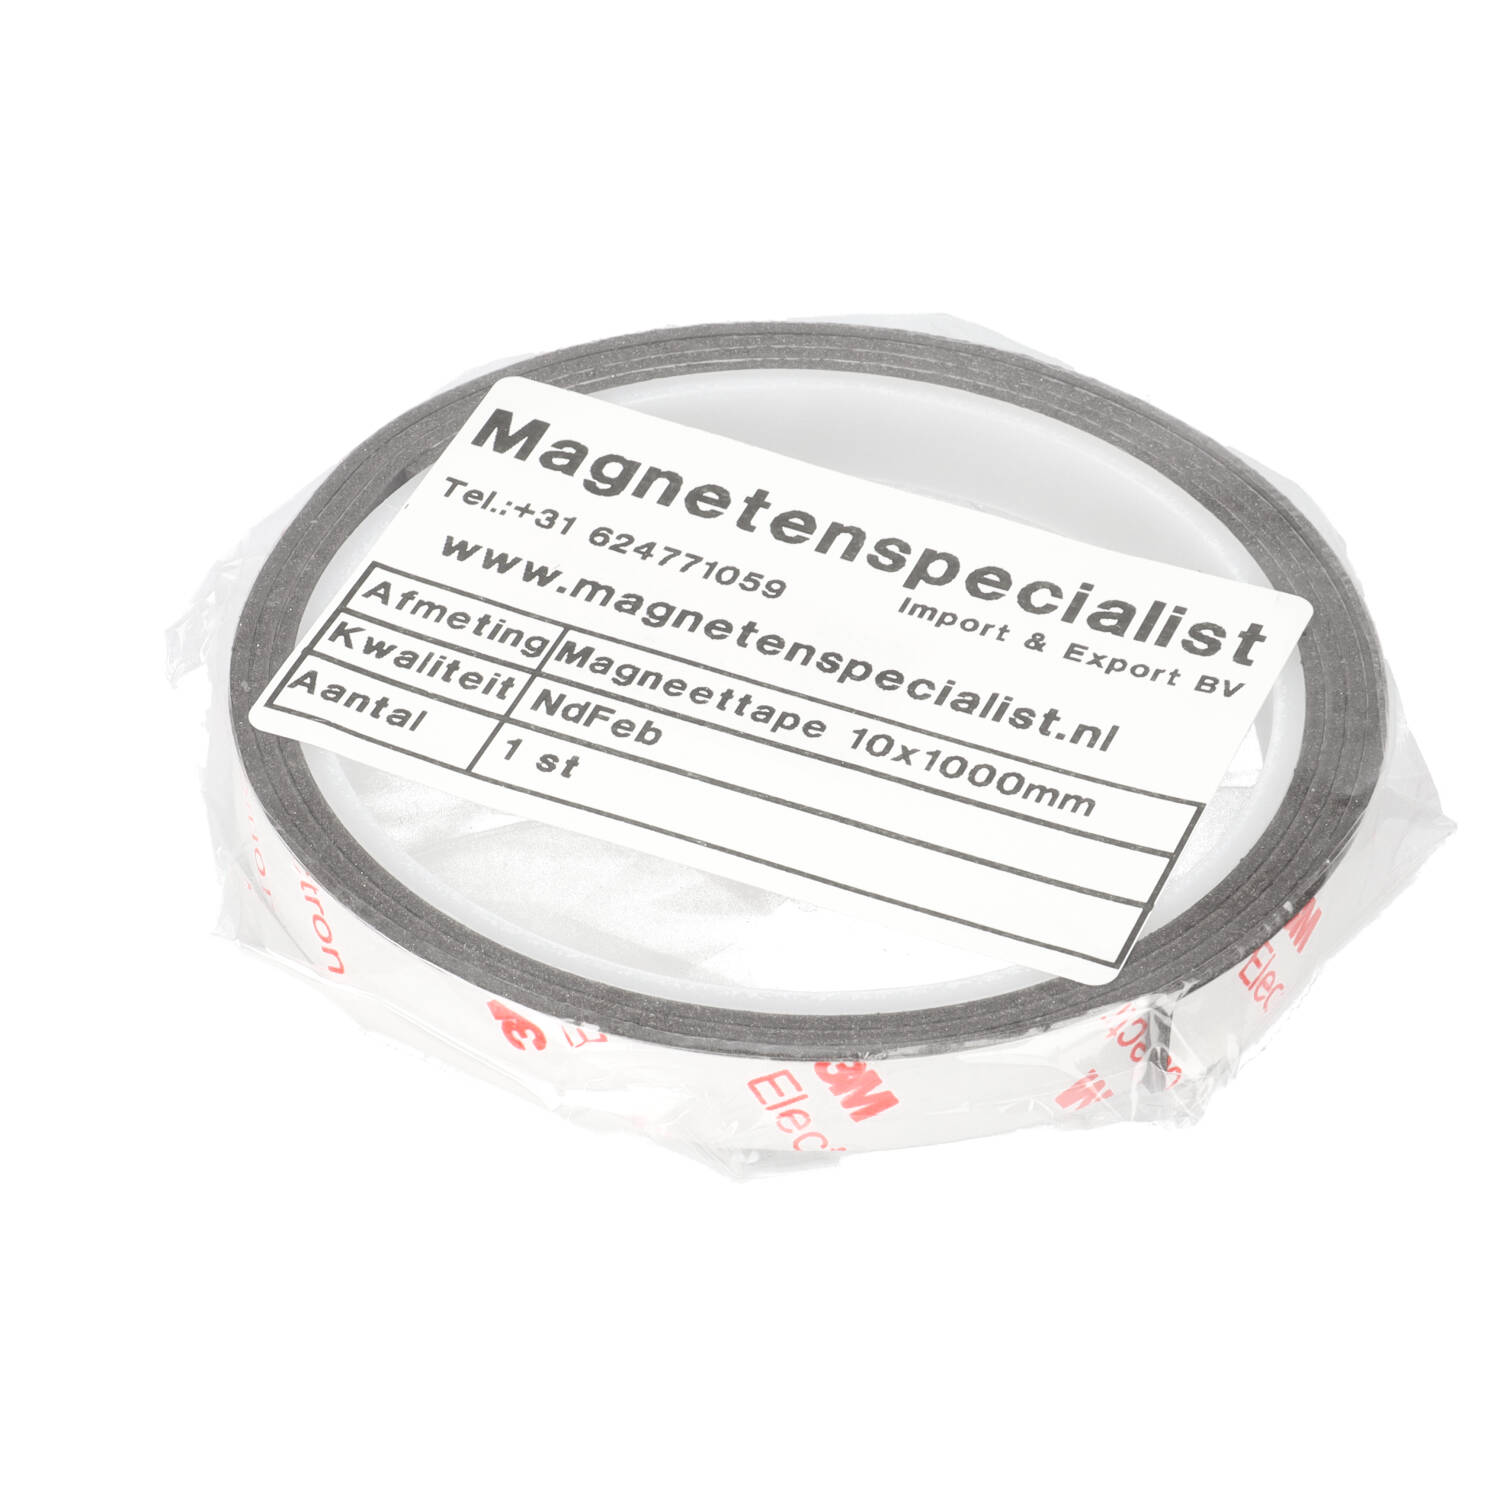 Rauw Monarchie voldoende Zelfklevende Neodymium Magneetband 10x1000mm - Magnetenspecialist.nl